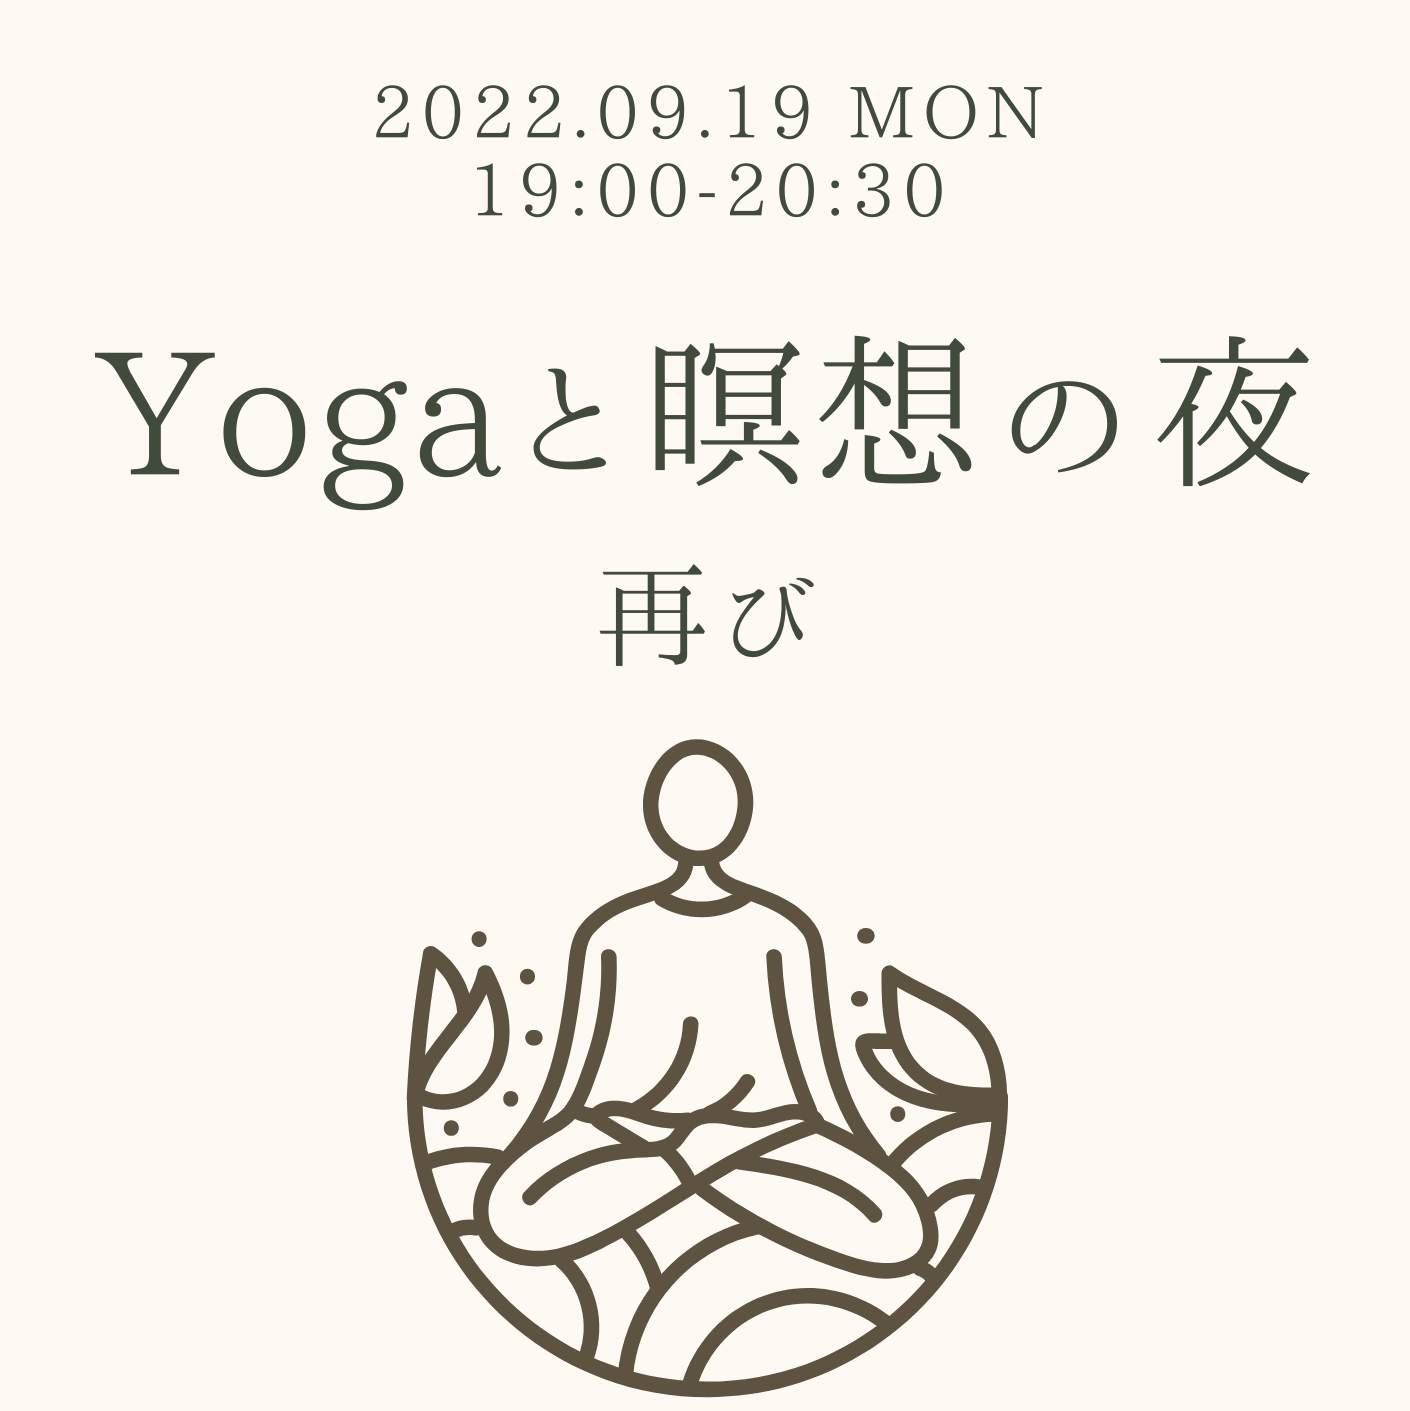 特別クラス「Yogaと瞑想 再び」